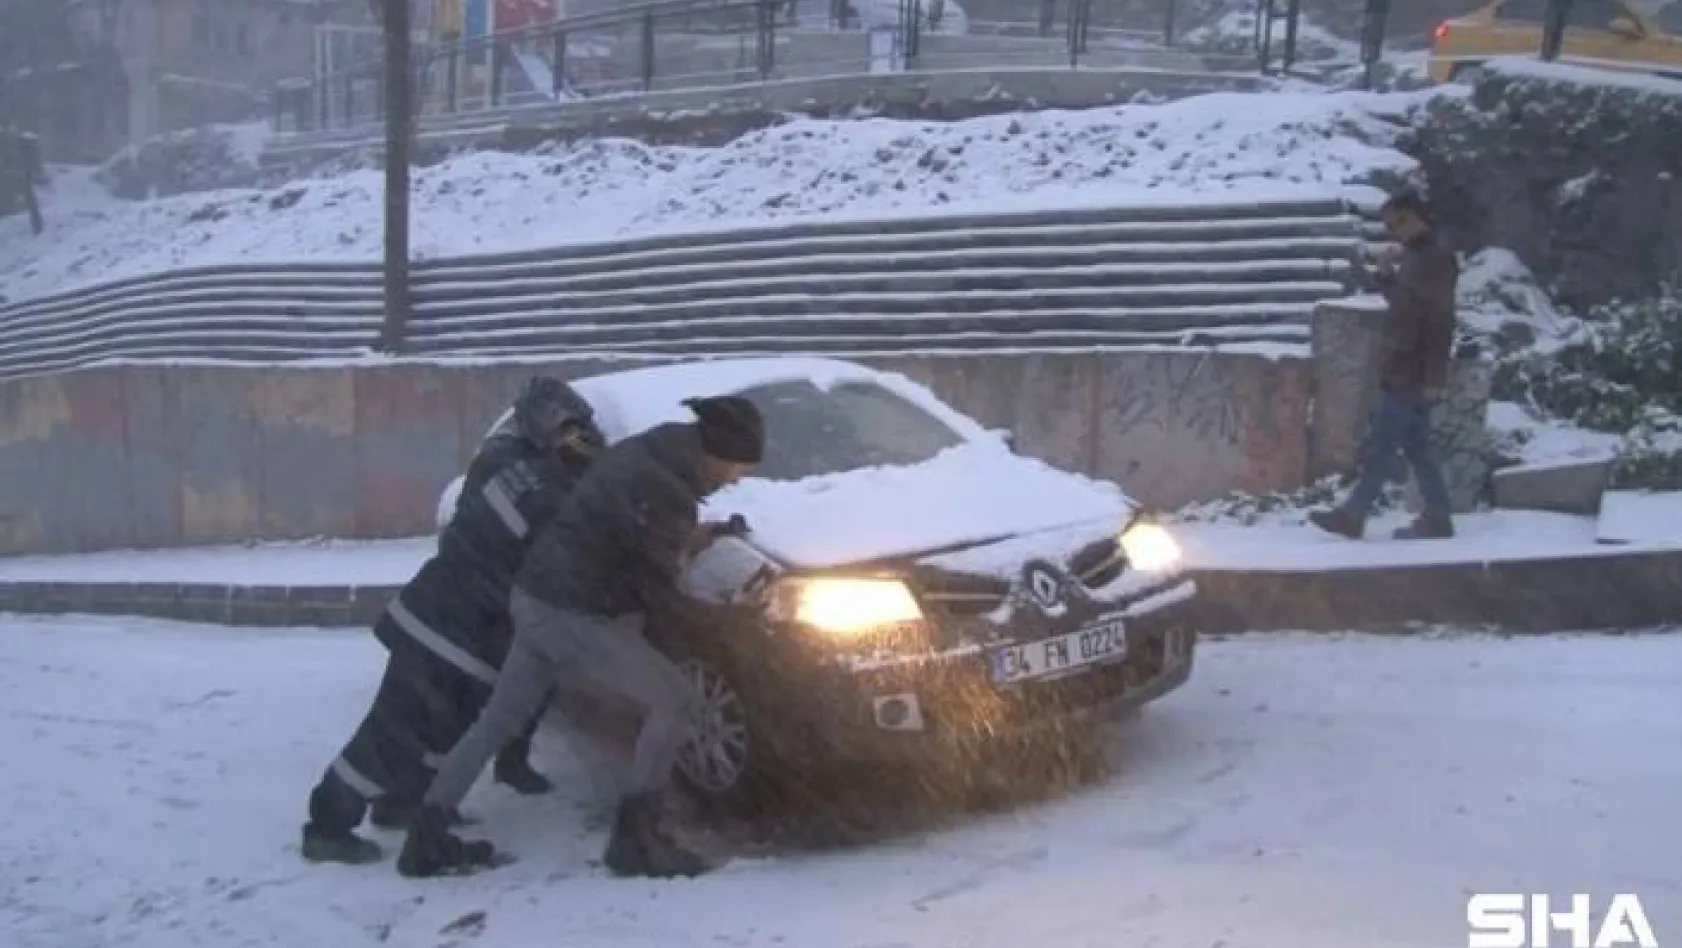 Kağıthane'de yoğun kar yağışı nedeniyle araçlar ilerlemekte güçlük çekti